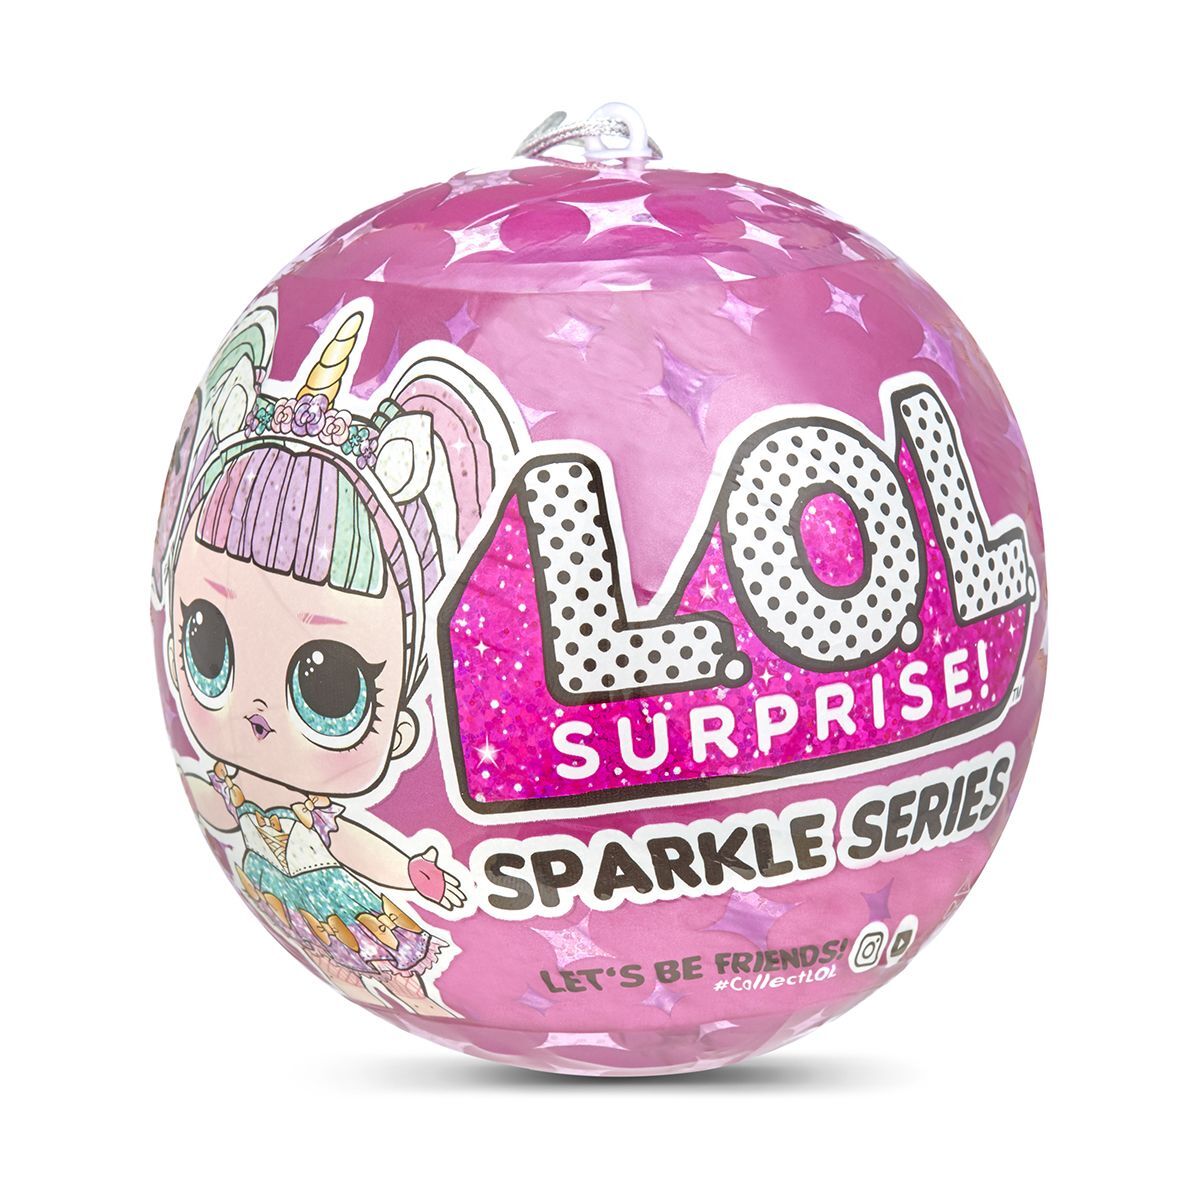 Papusa LOL Surprise Sparkle